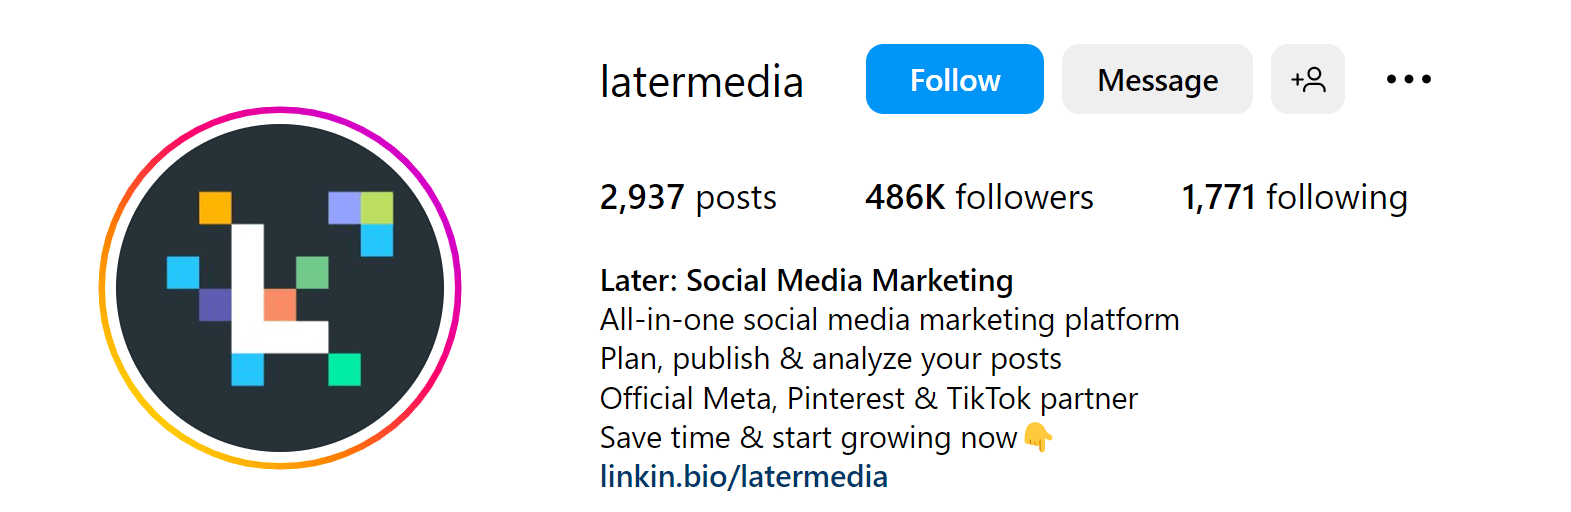 an example of social media marketing platform's Instagram bio